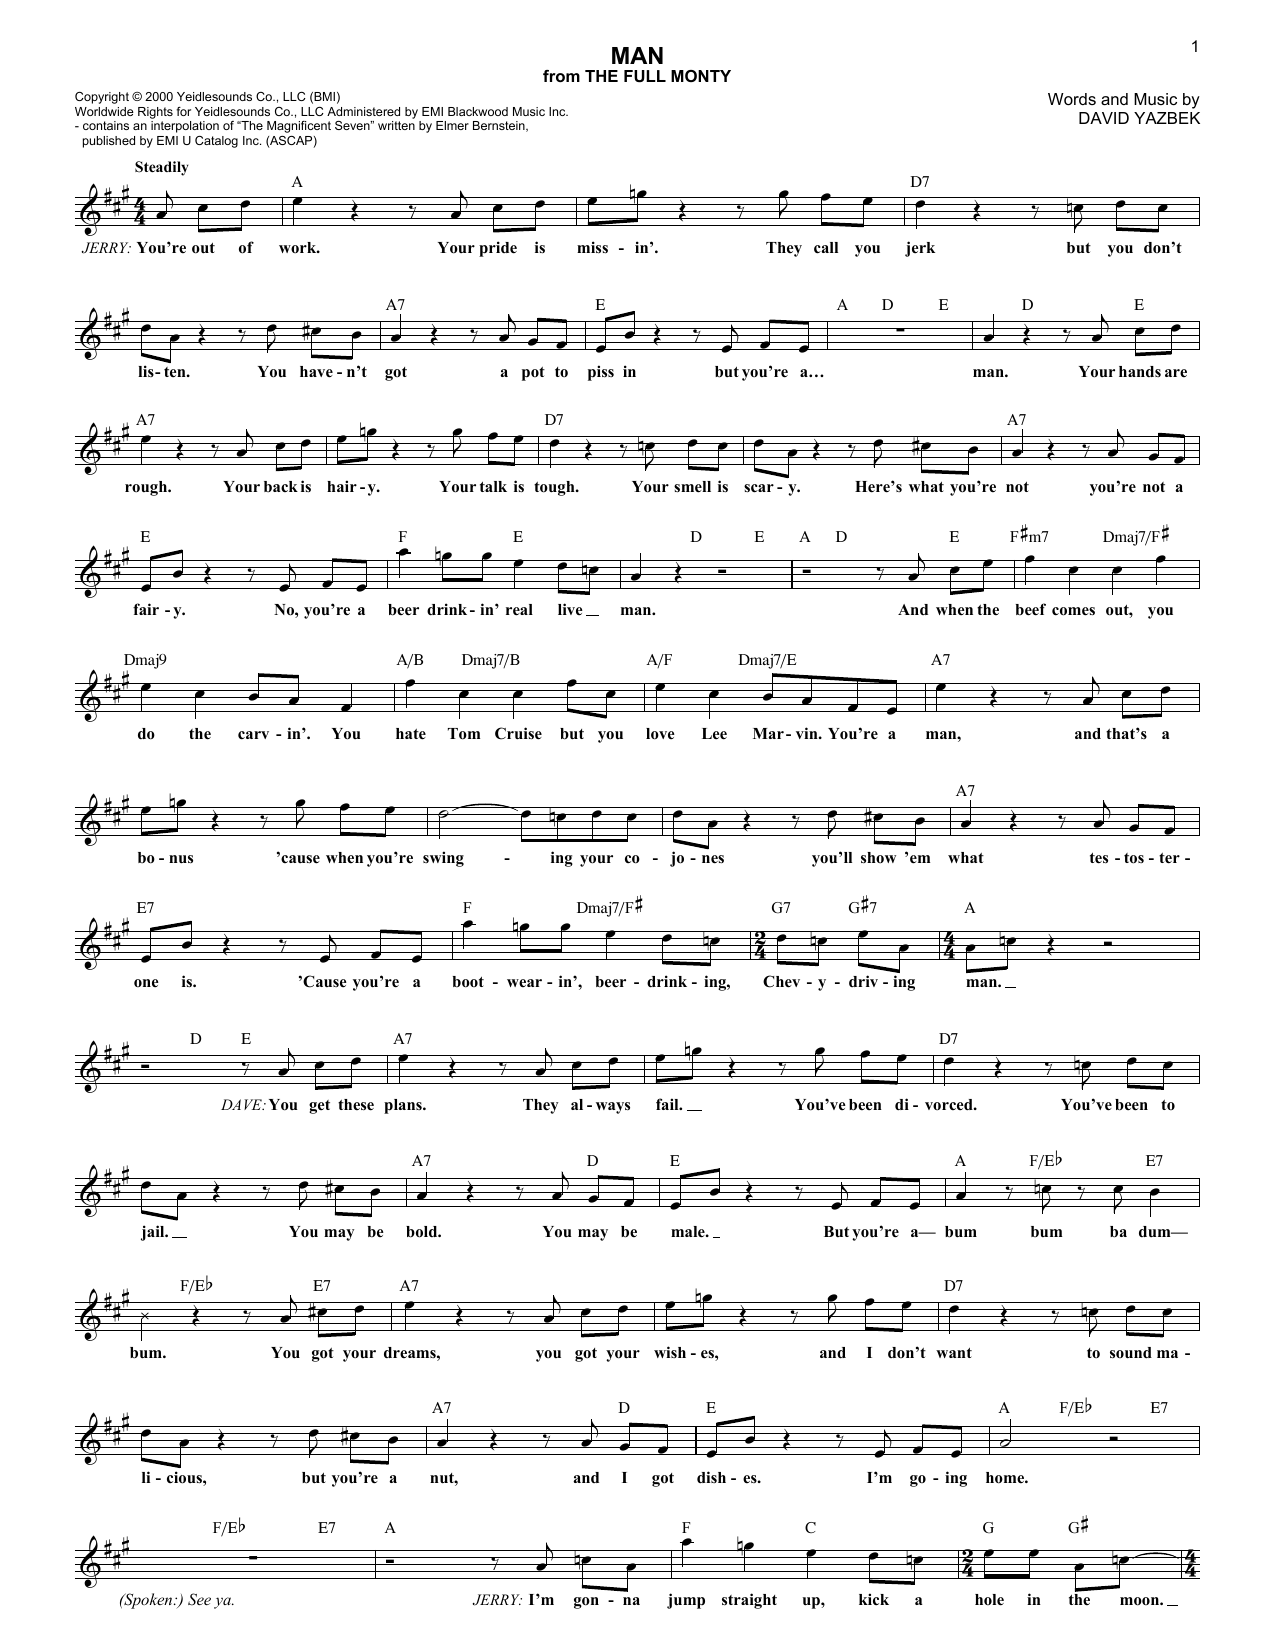 David Yazbek Man Sheet Music Notes & Chords for Melody Line, Lyrics & Chords - Download or Print PDF